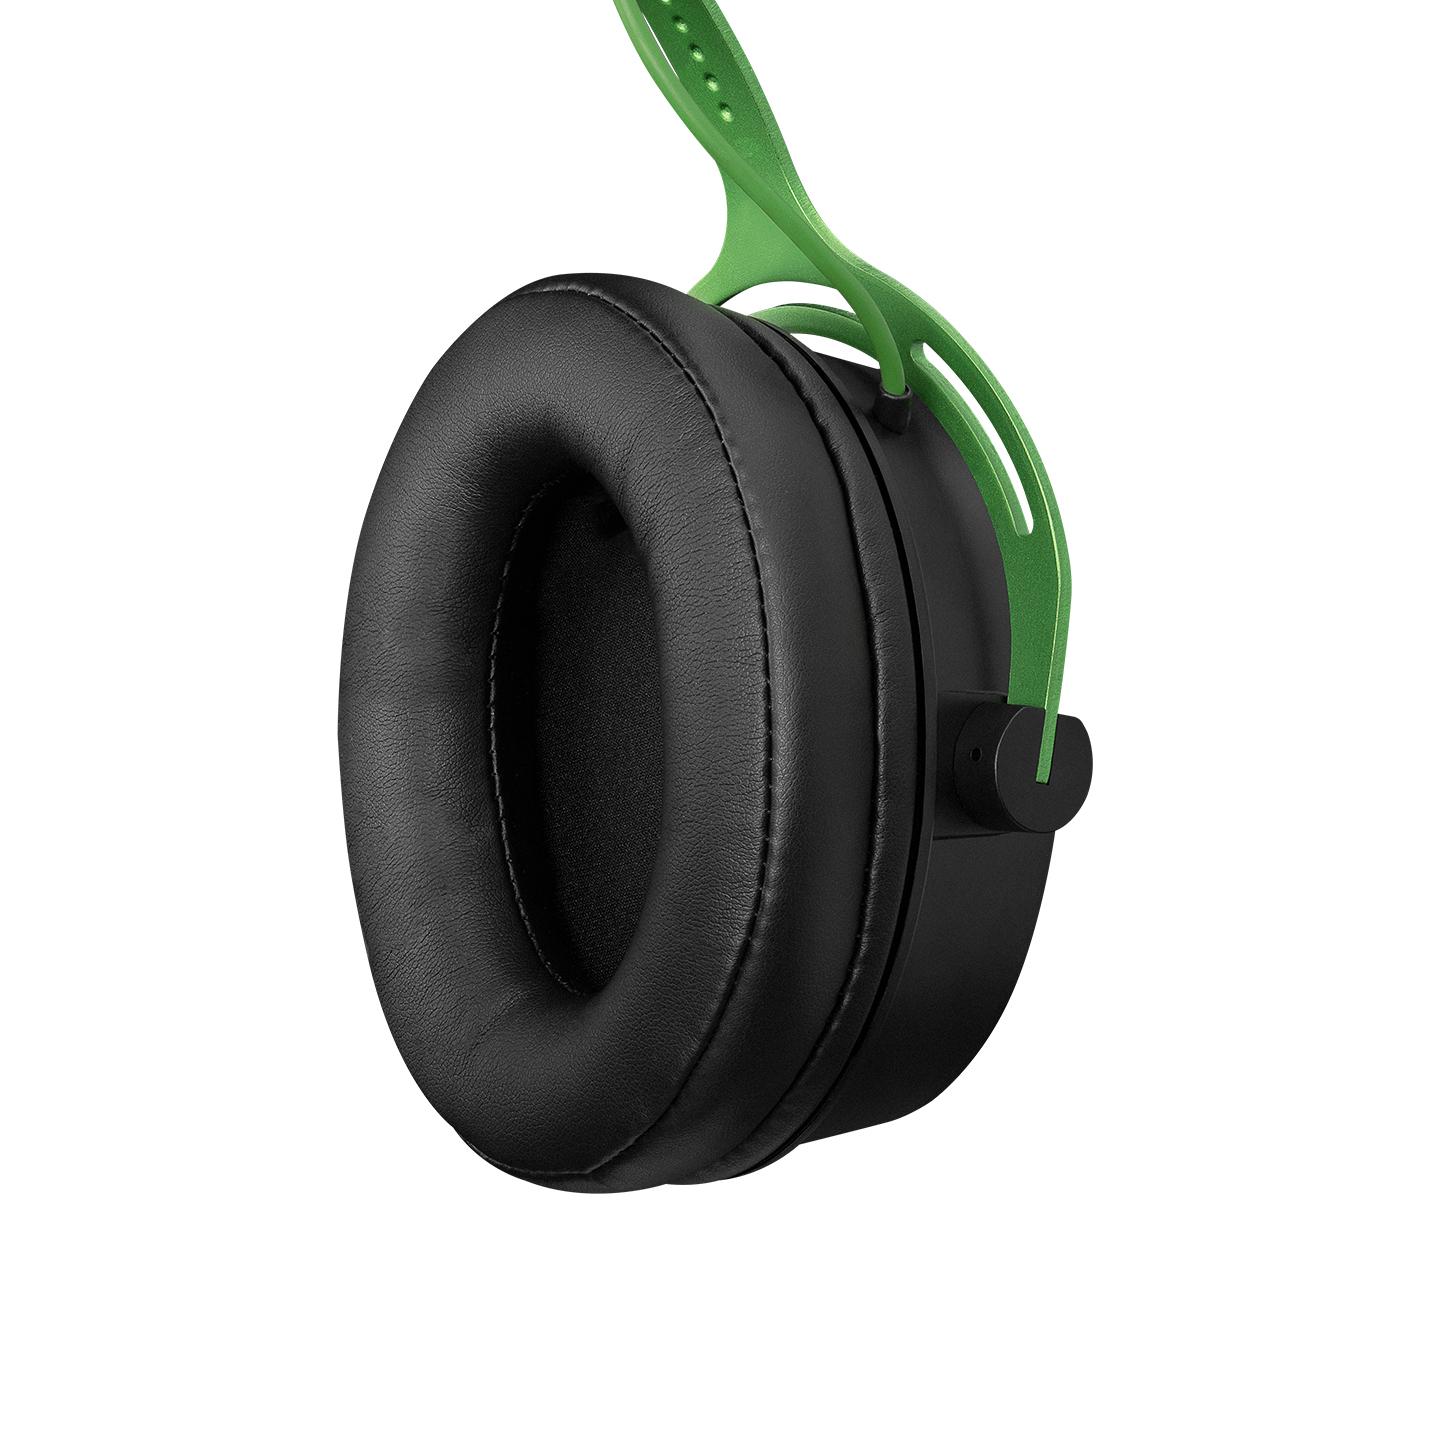 Selected image for RAMPAGE Gejmerske slušalice sa mikrofonom - in line RM-F5 FURY-X USB 7.1 crno-zelene